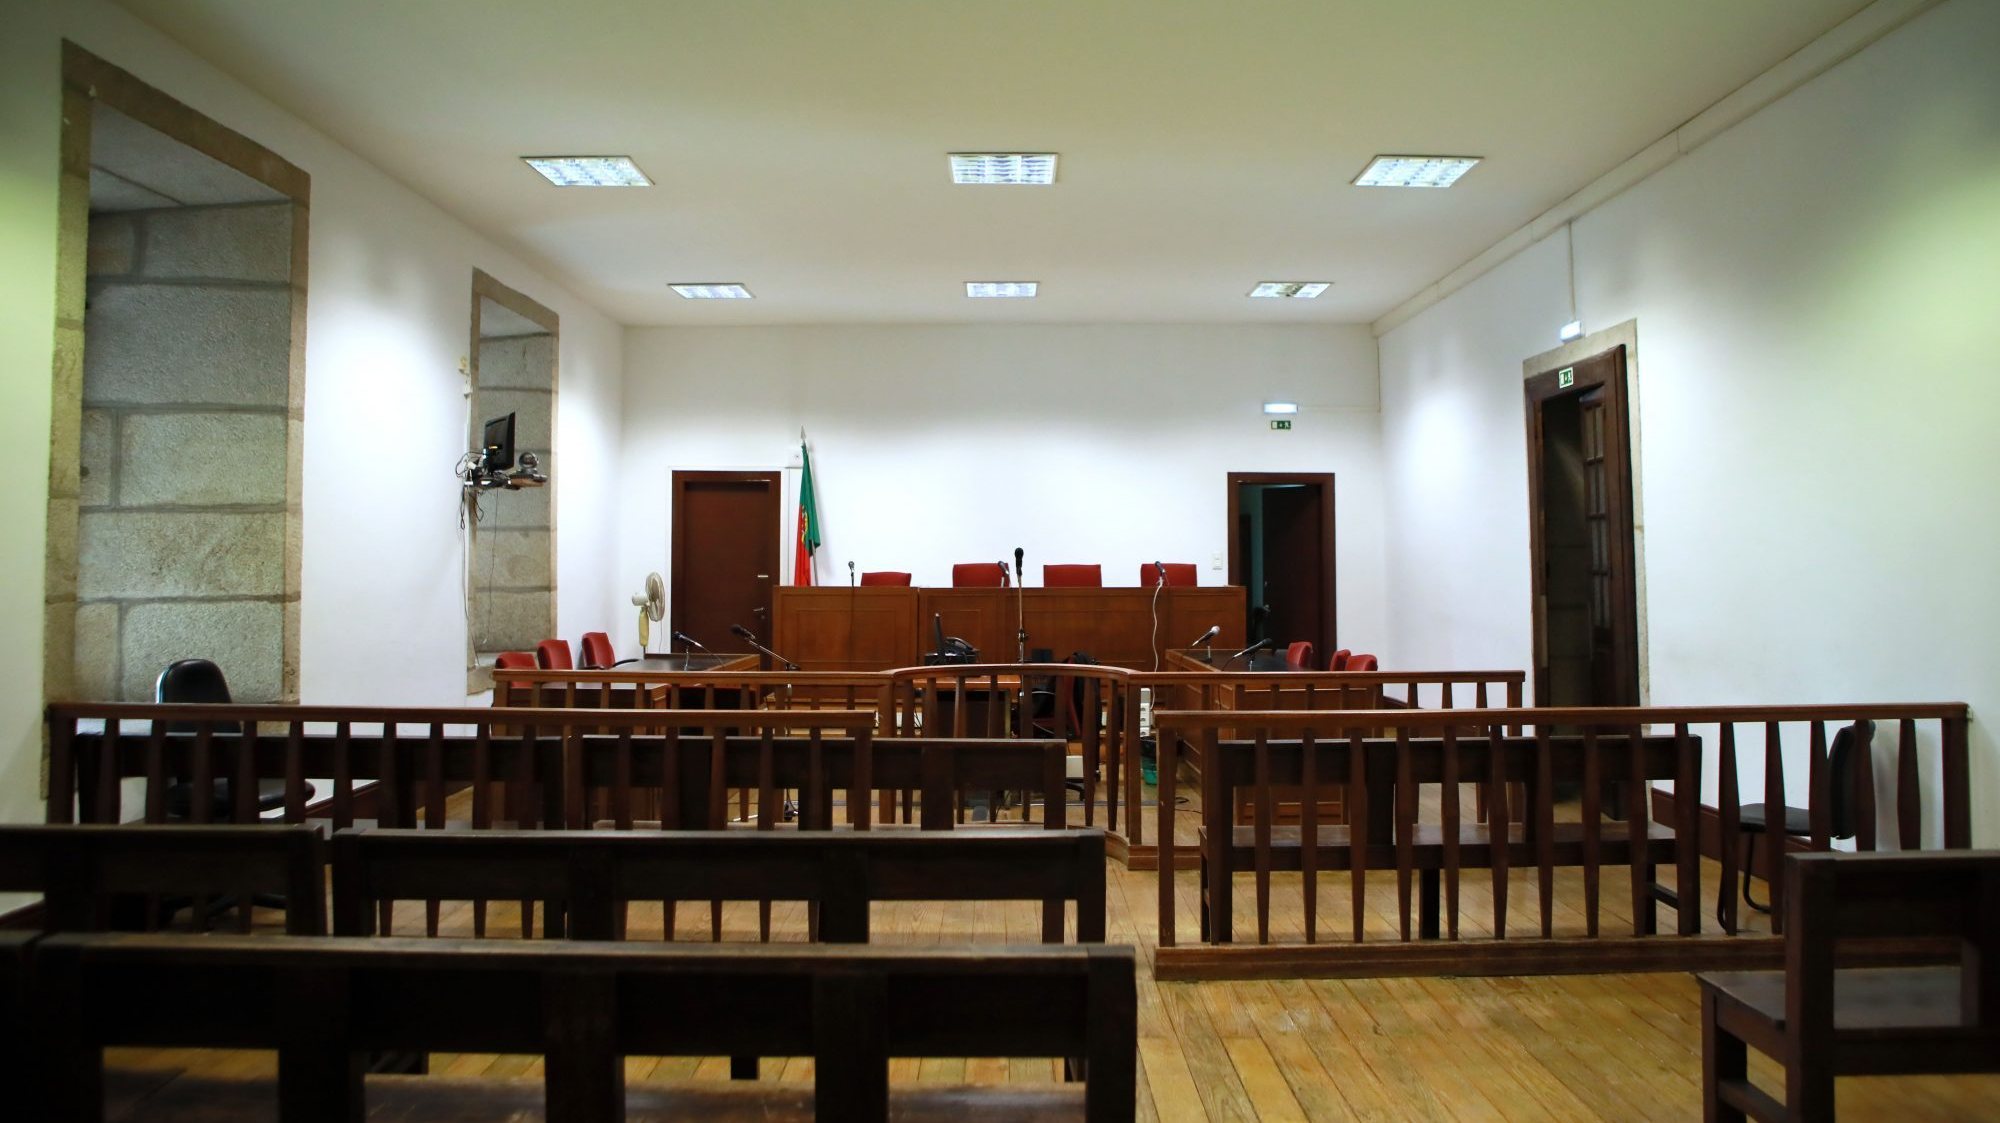 O julgamento decorreu no Tribunal de São João Novo, no Porto